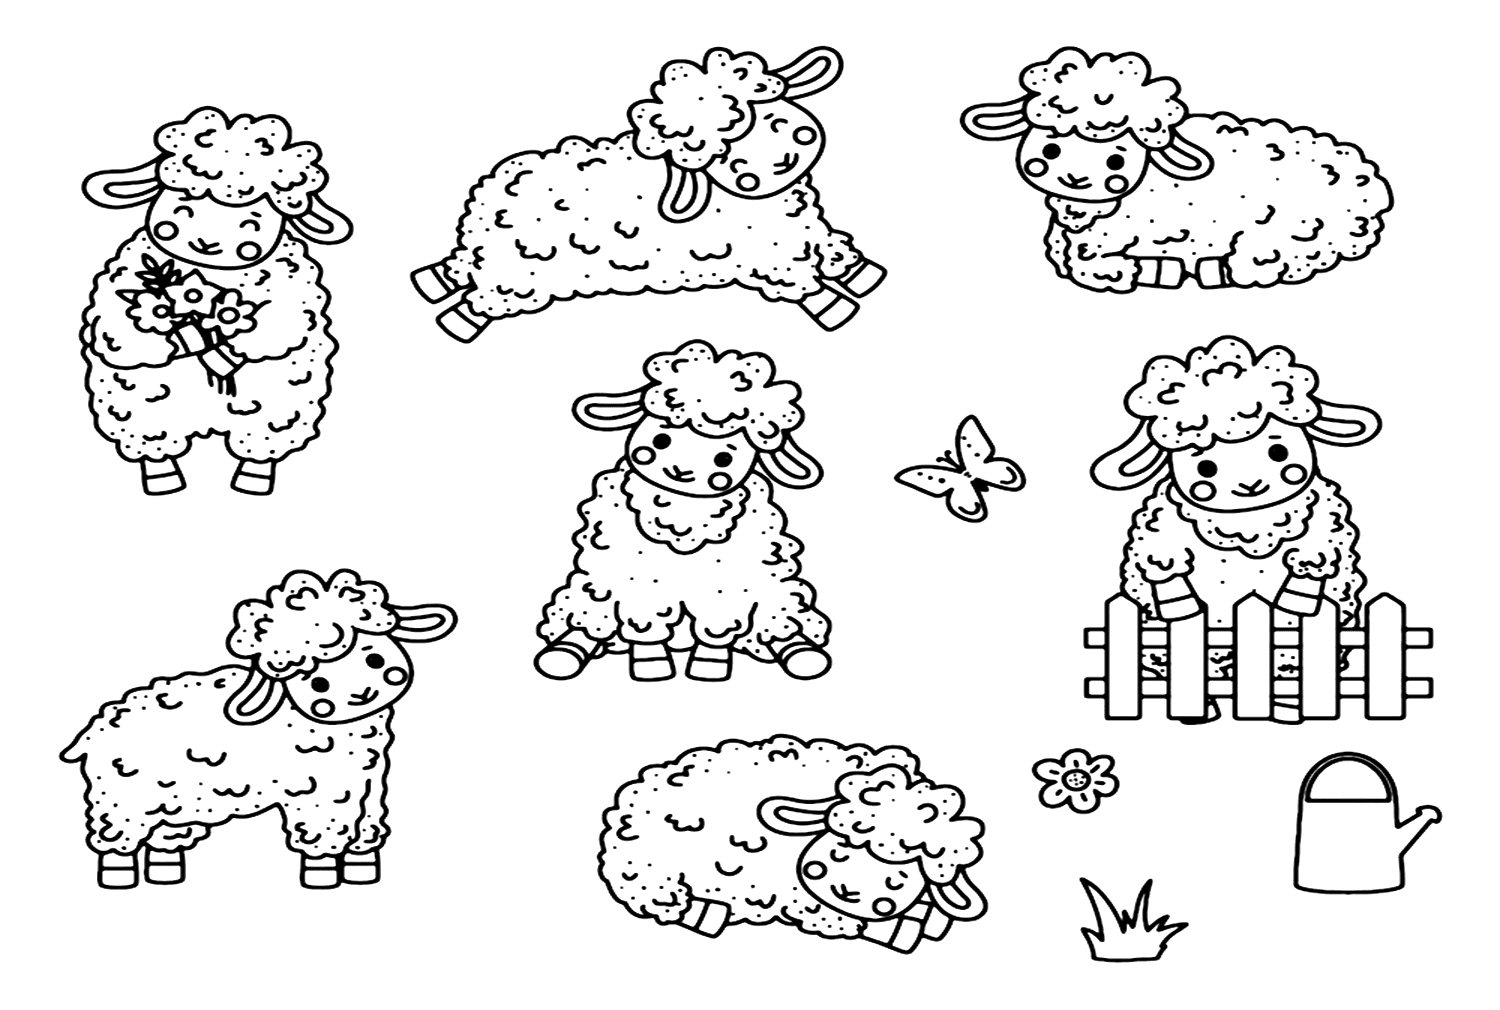 Lamb Poses from Lamb